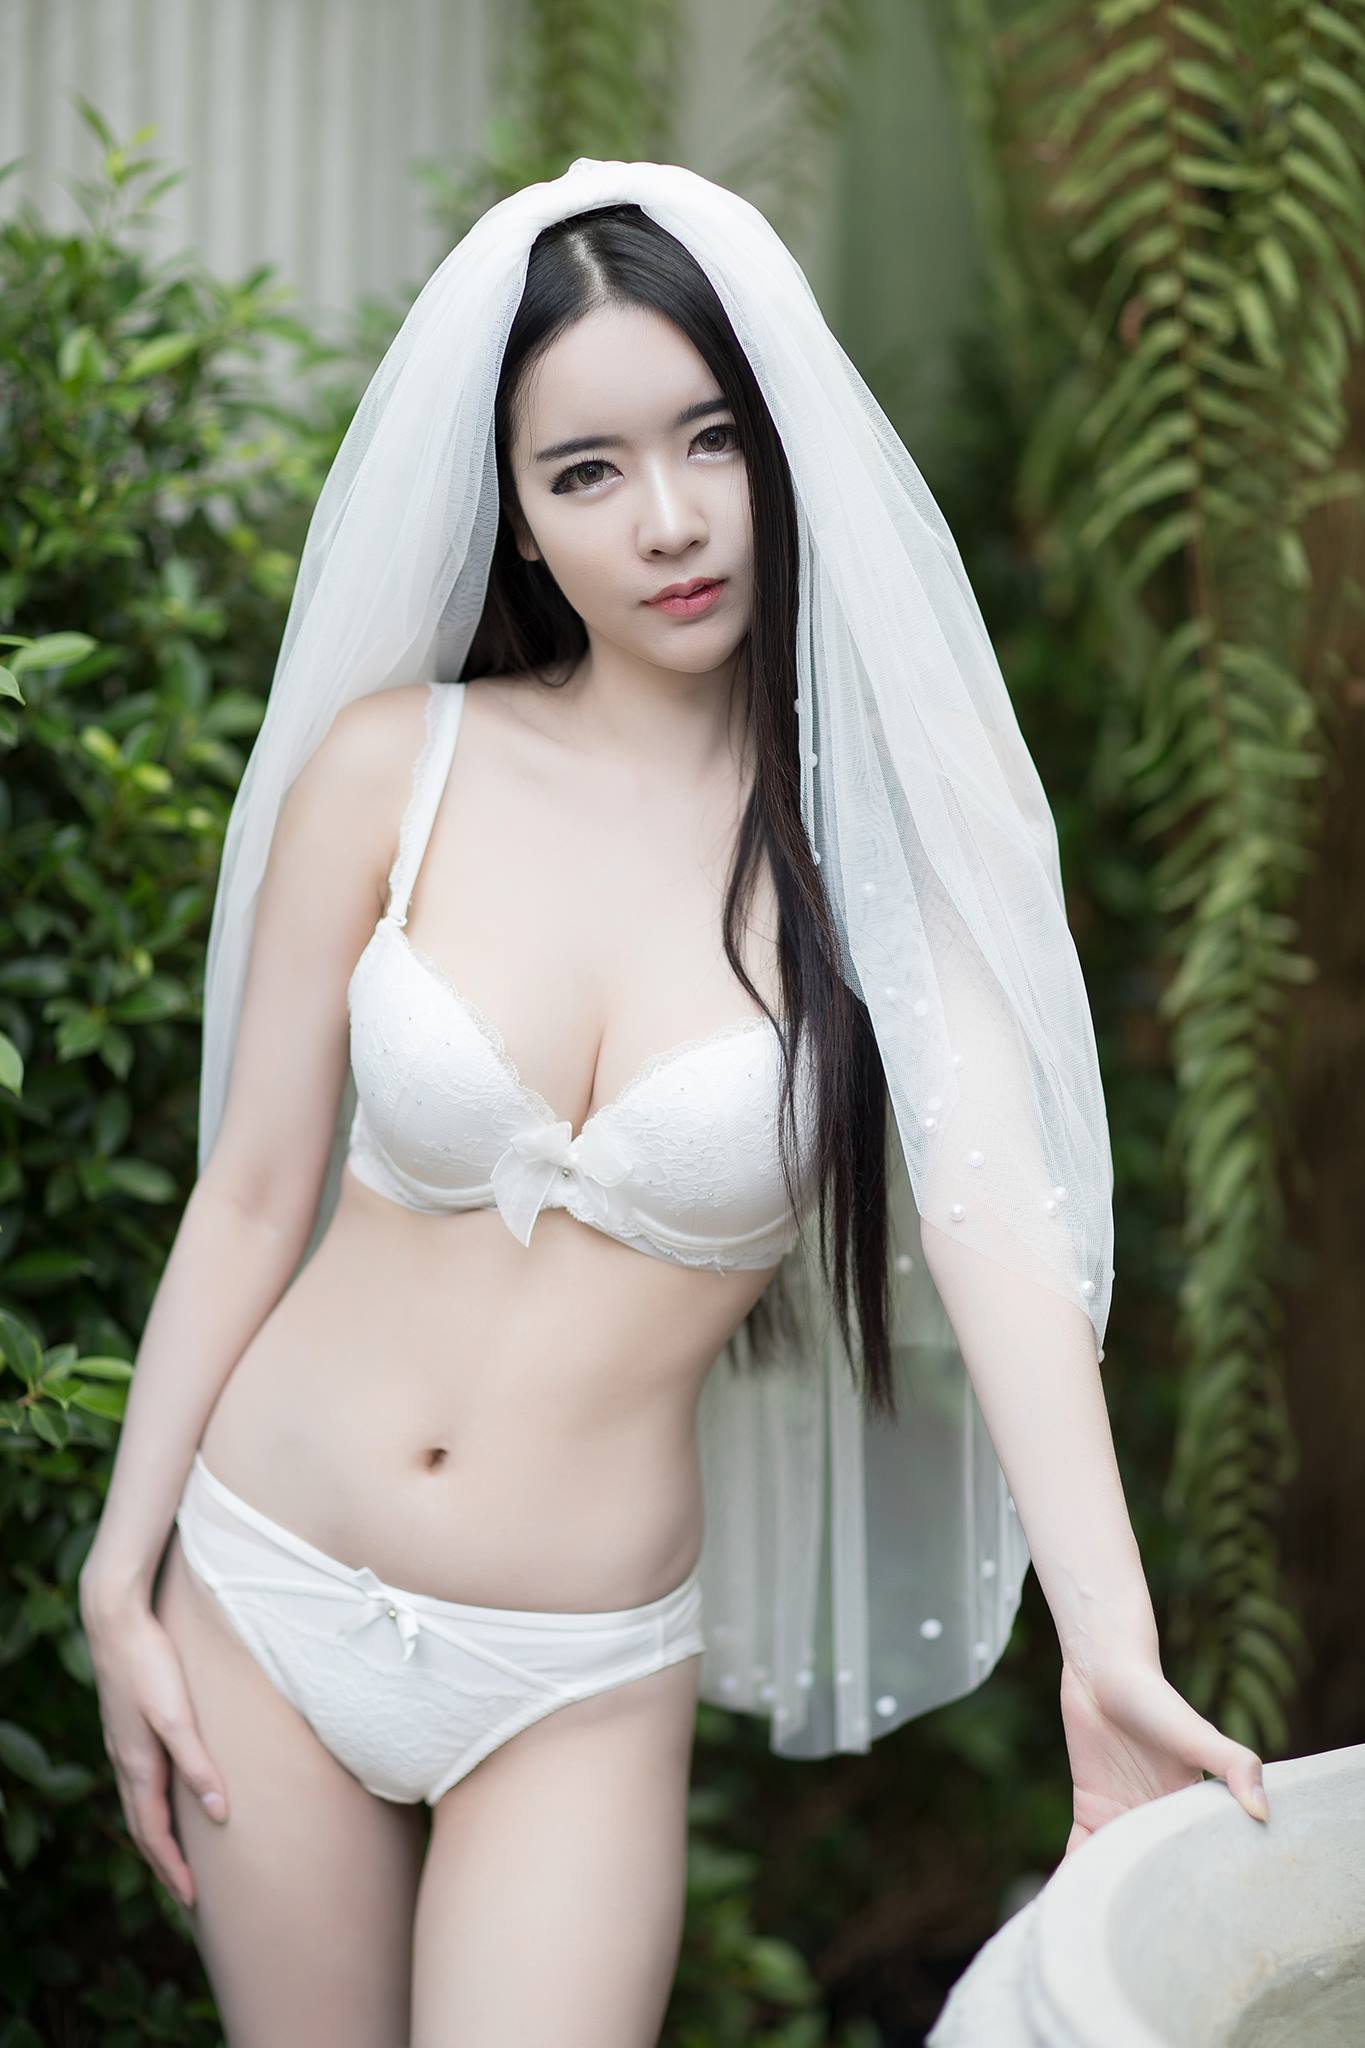 pure & hot lingerie Asian girl